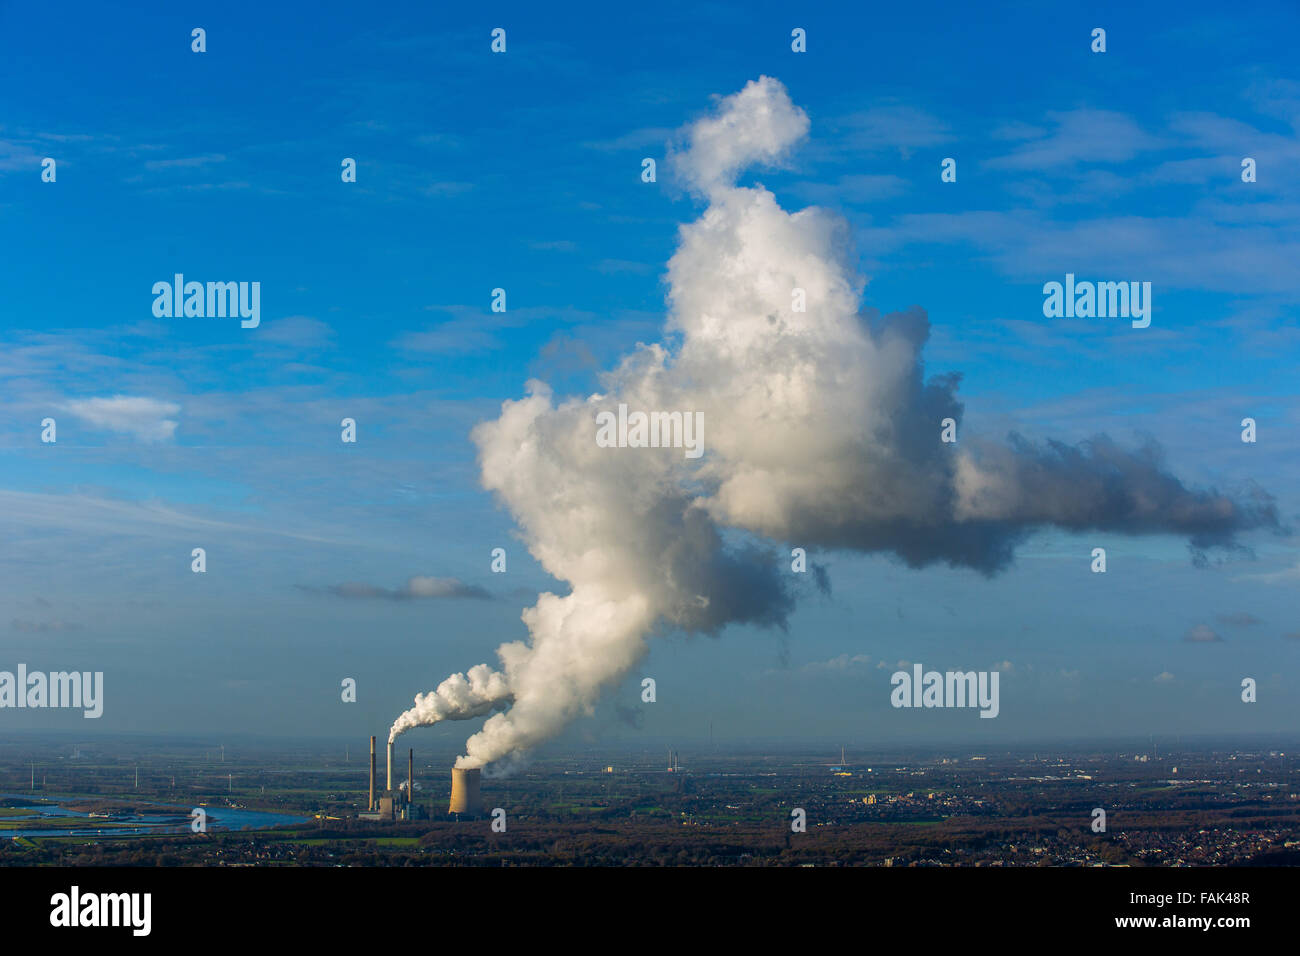 Kraftwerk Voerde planta de energía de carbón en el Rin, emisiones de humo, chimeneas, torre de refrigeración, Voerde, districto de Ruhr Foto de stock